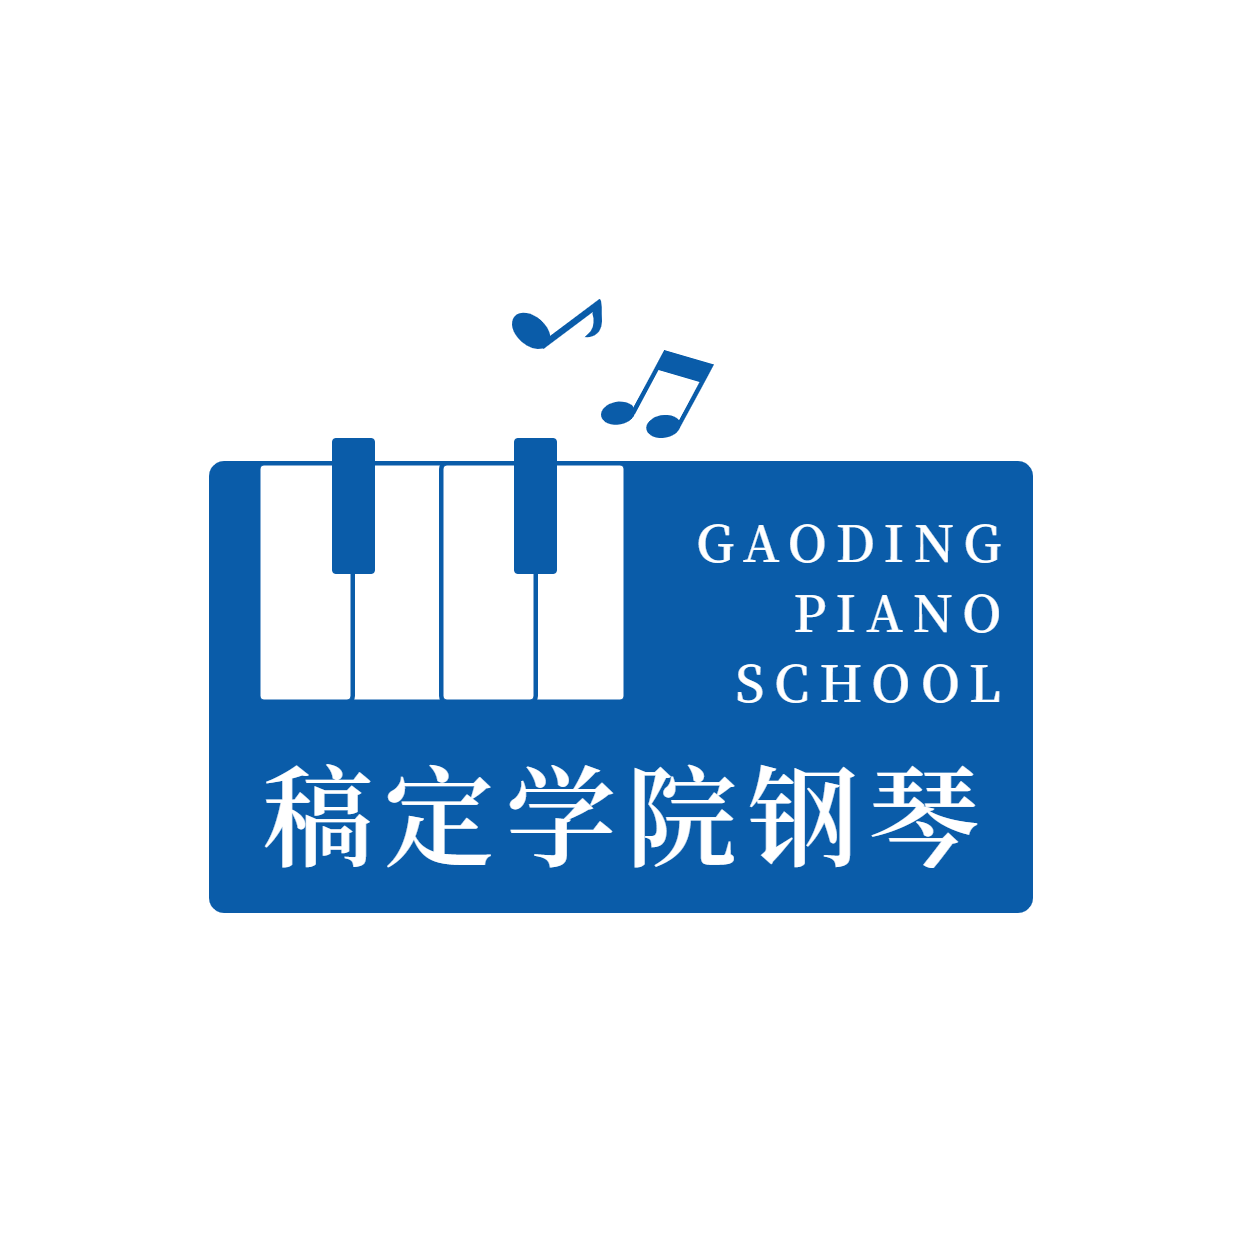 教育培训机构钢琴班logo